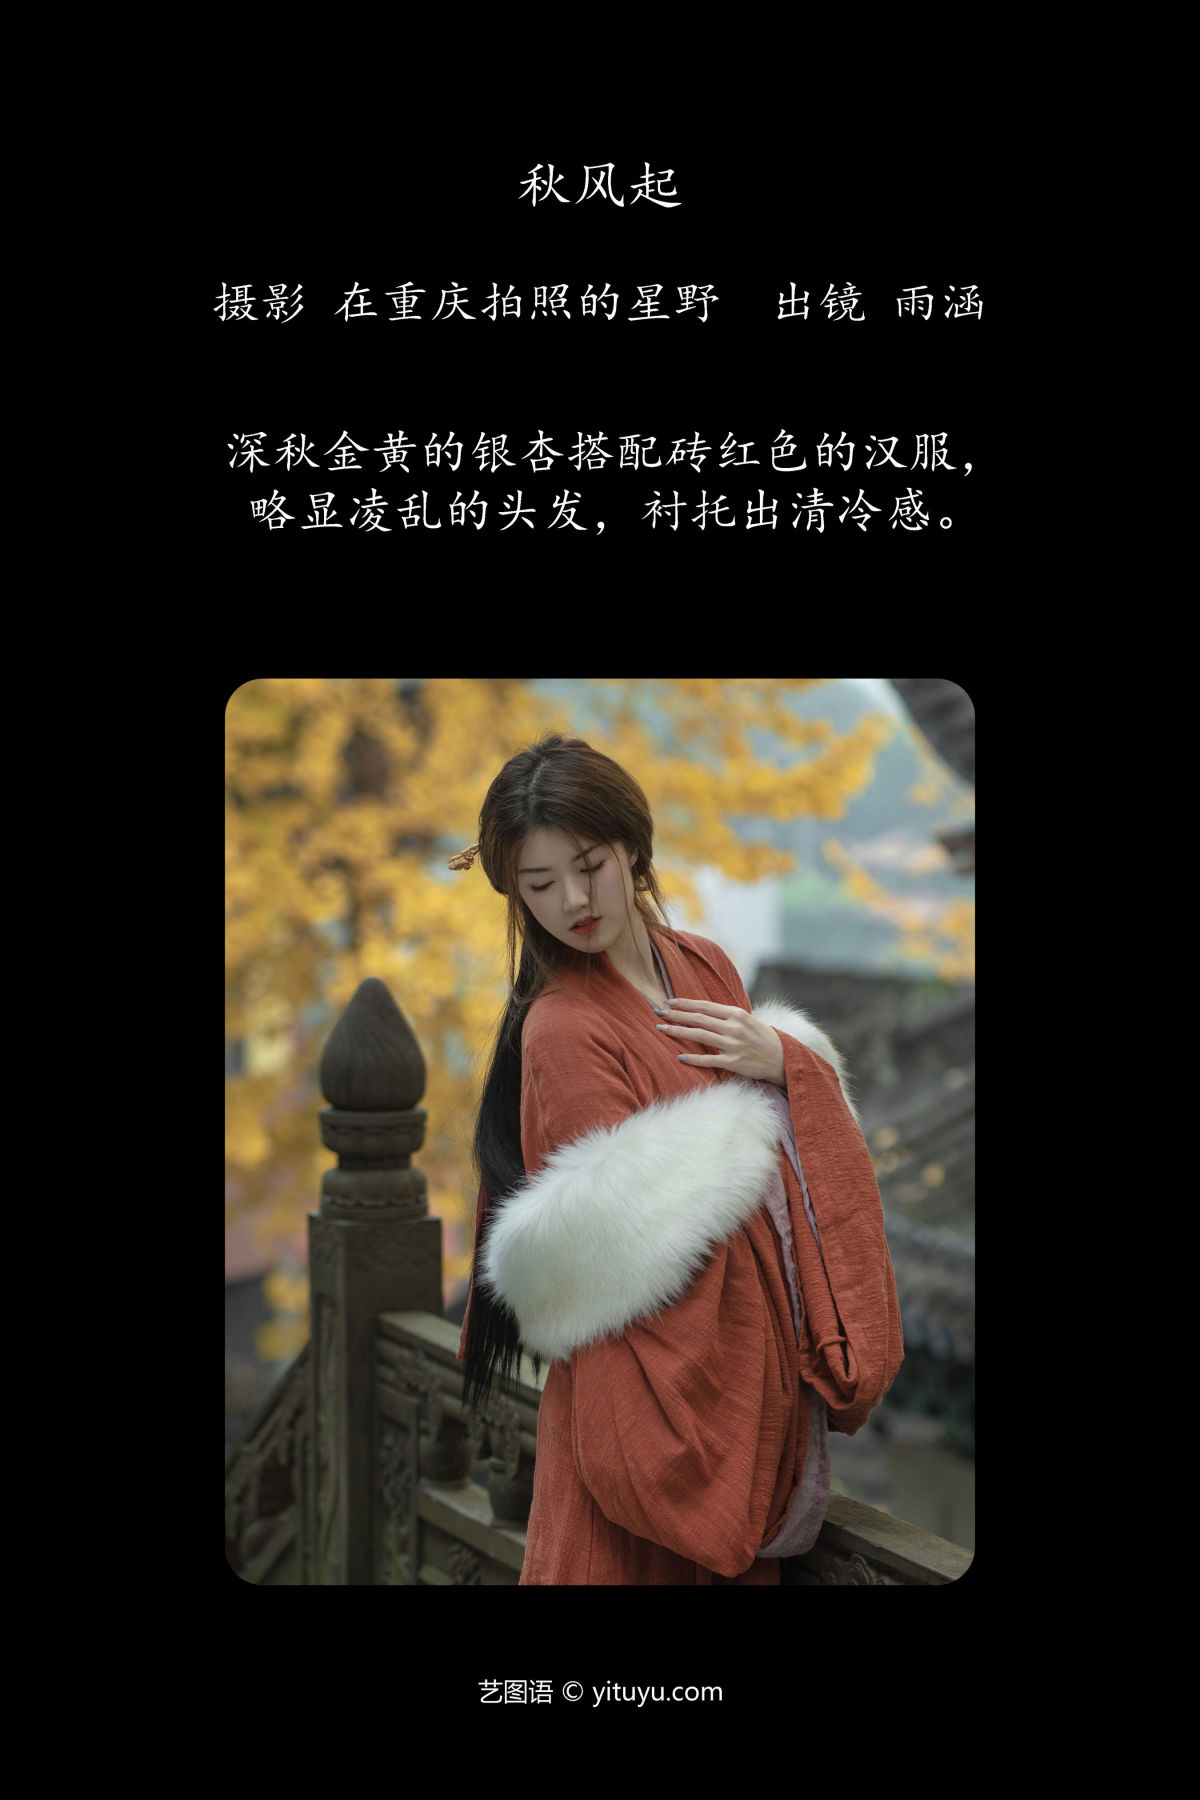 在重庆拍照的星野_雨涵《秋风起》美图作品图片2